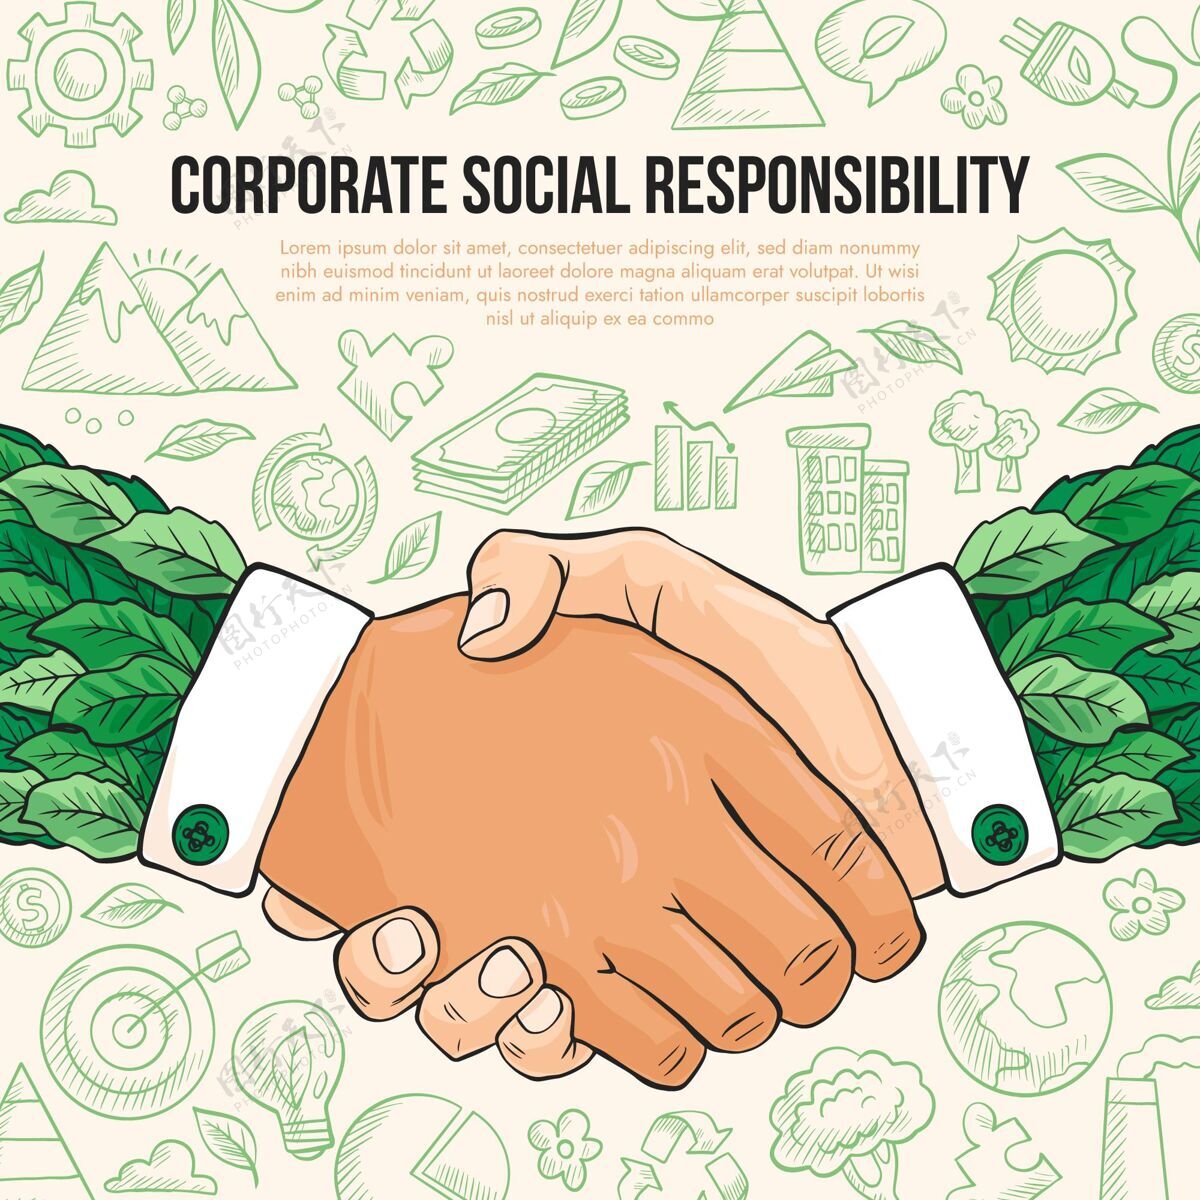 环境手绘企业社会责任理念企业社会责任道德企业